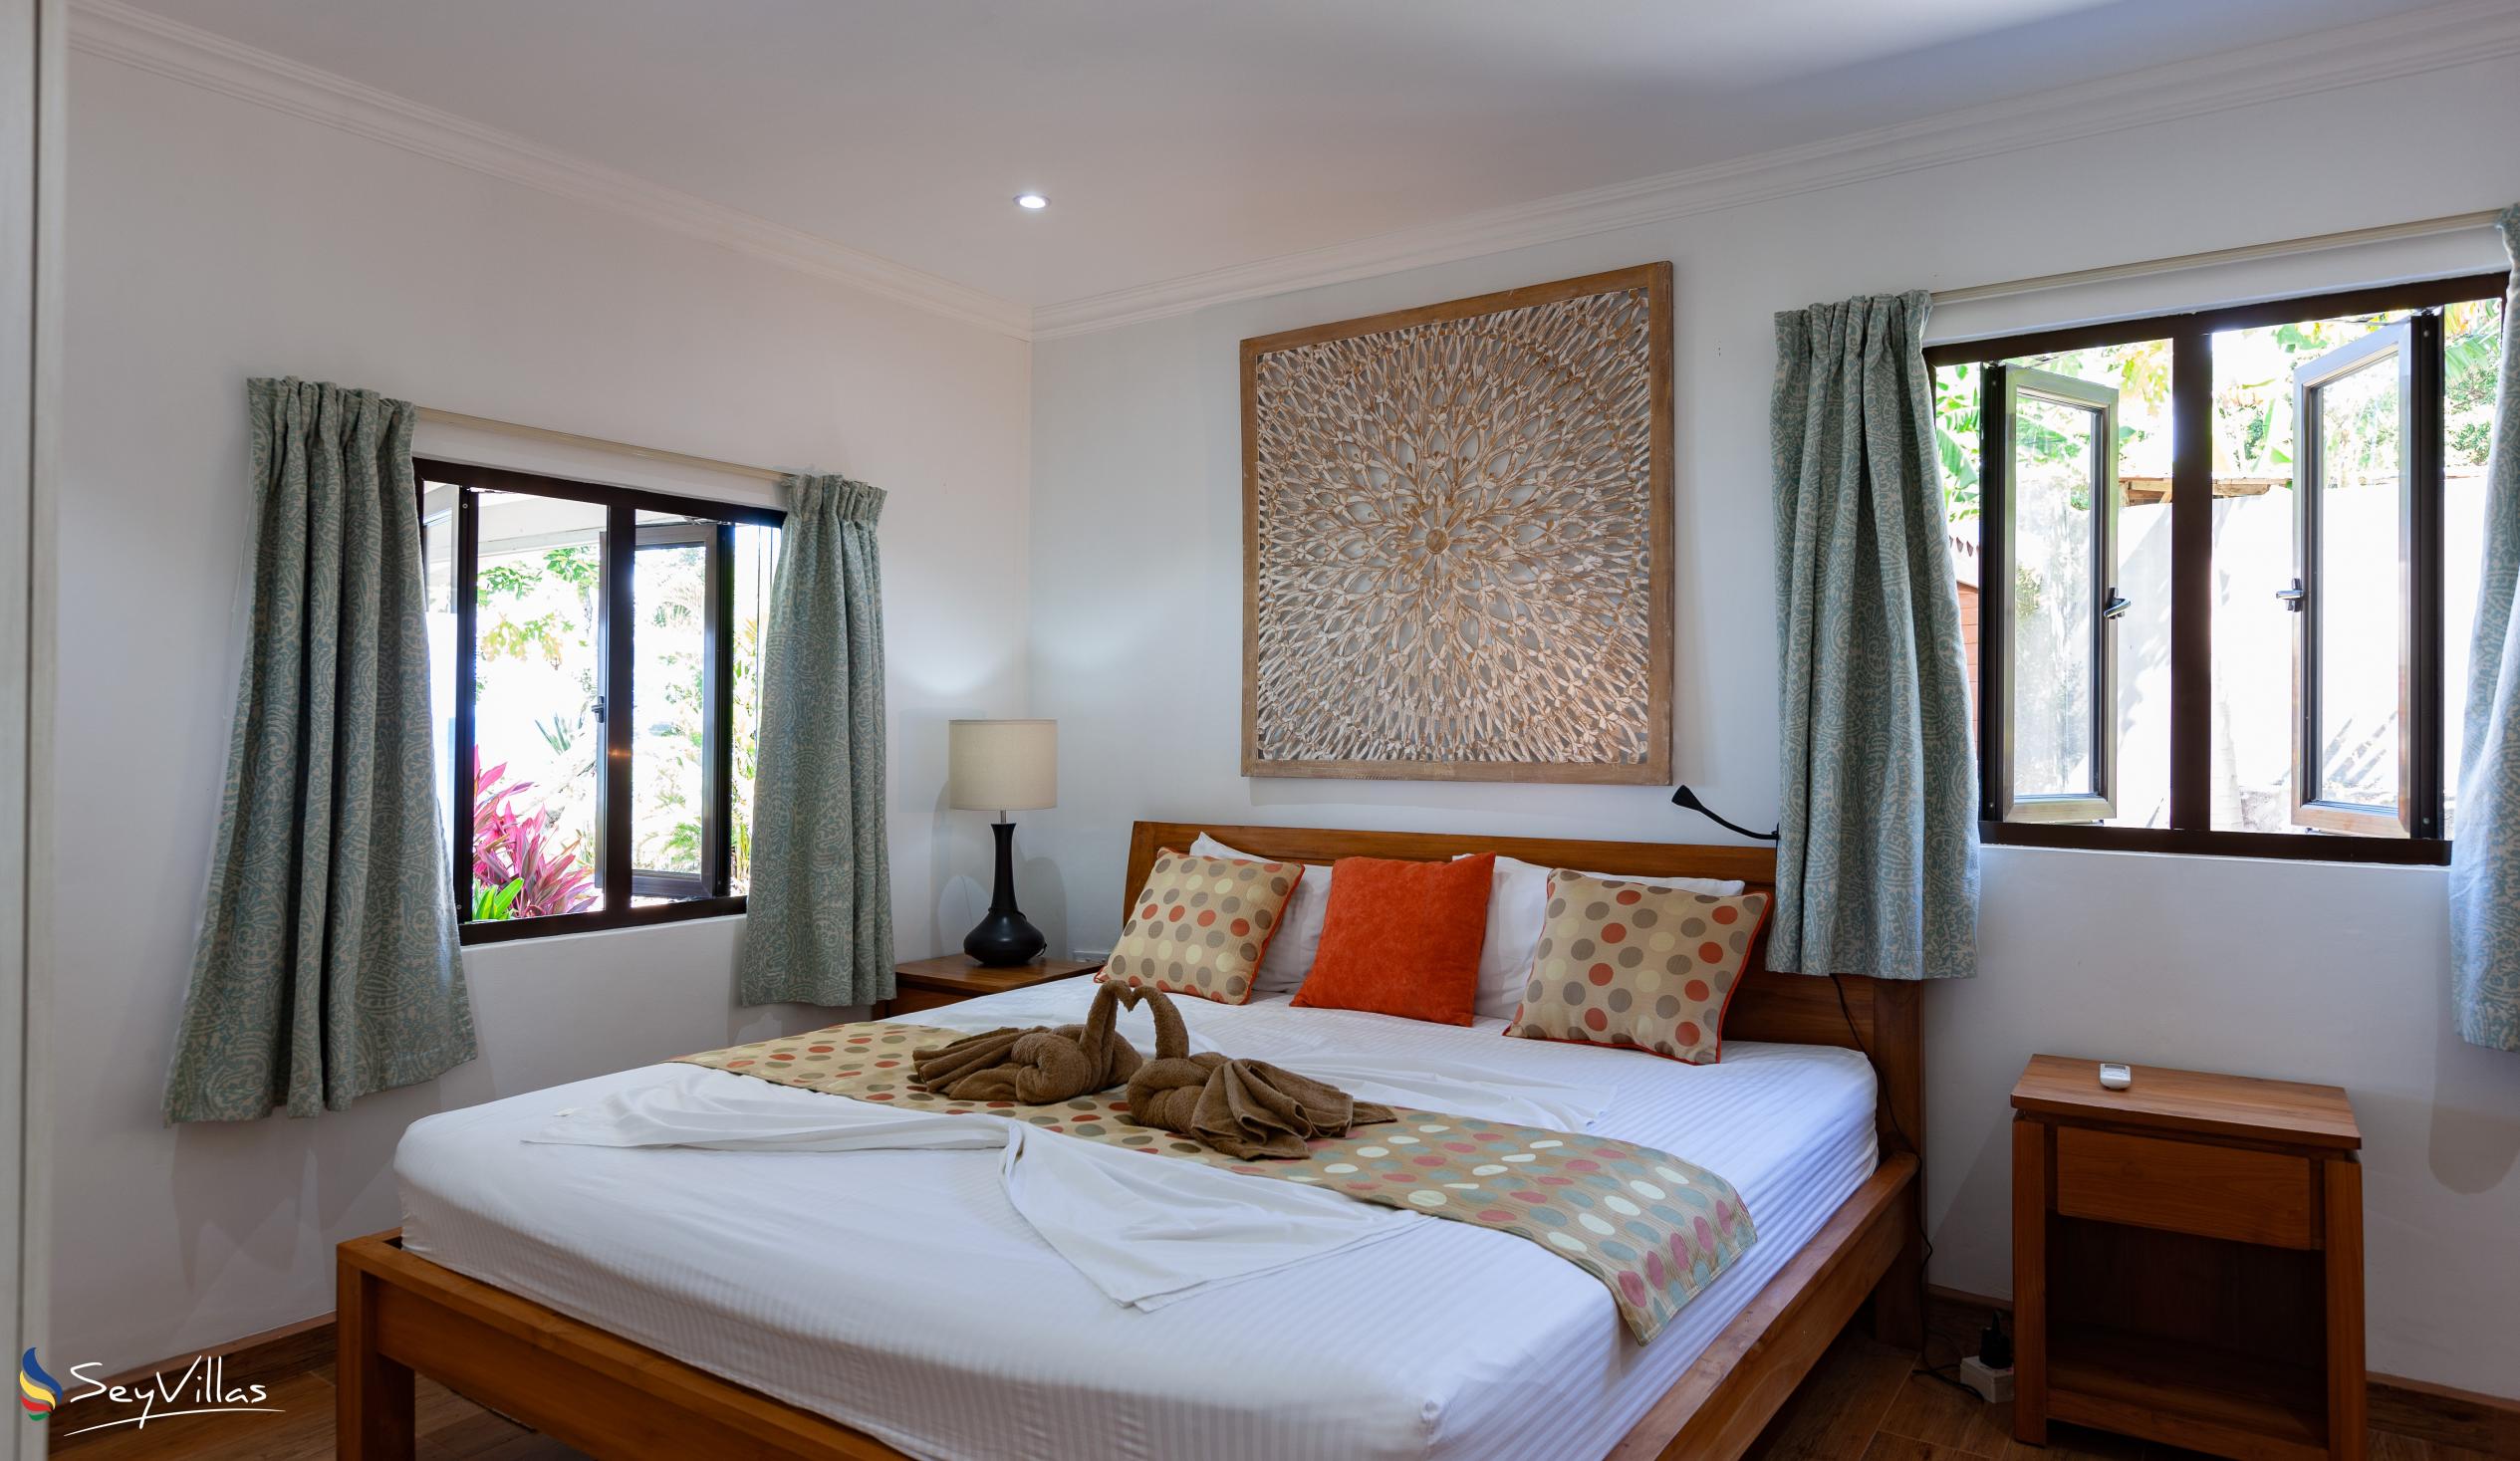 Photo 41: Cote Mer Villa - 2-Bedroom Villa - Praslin (Seychelles)